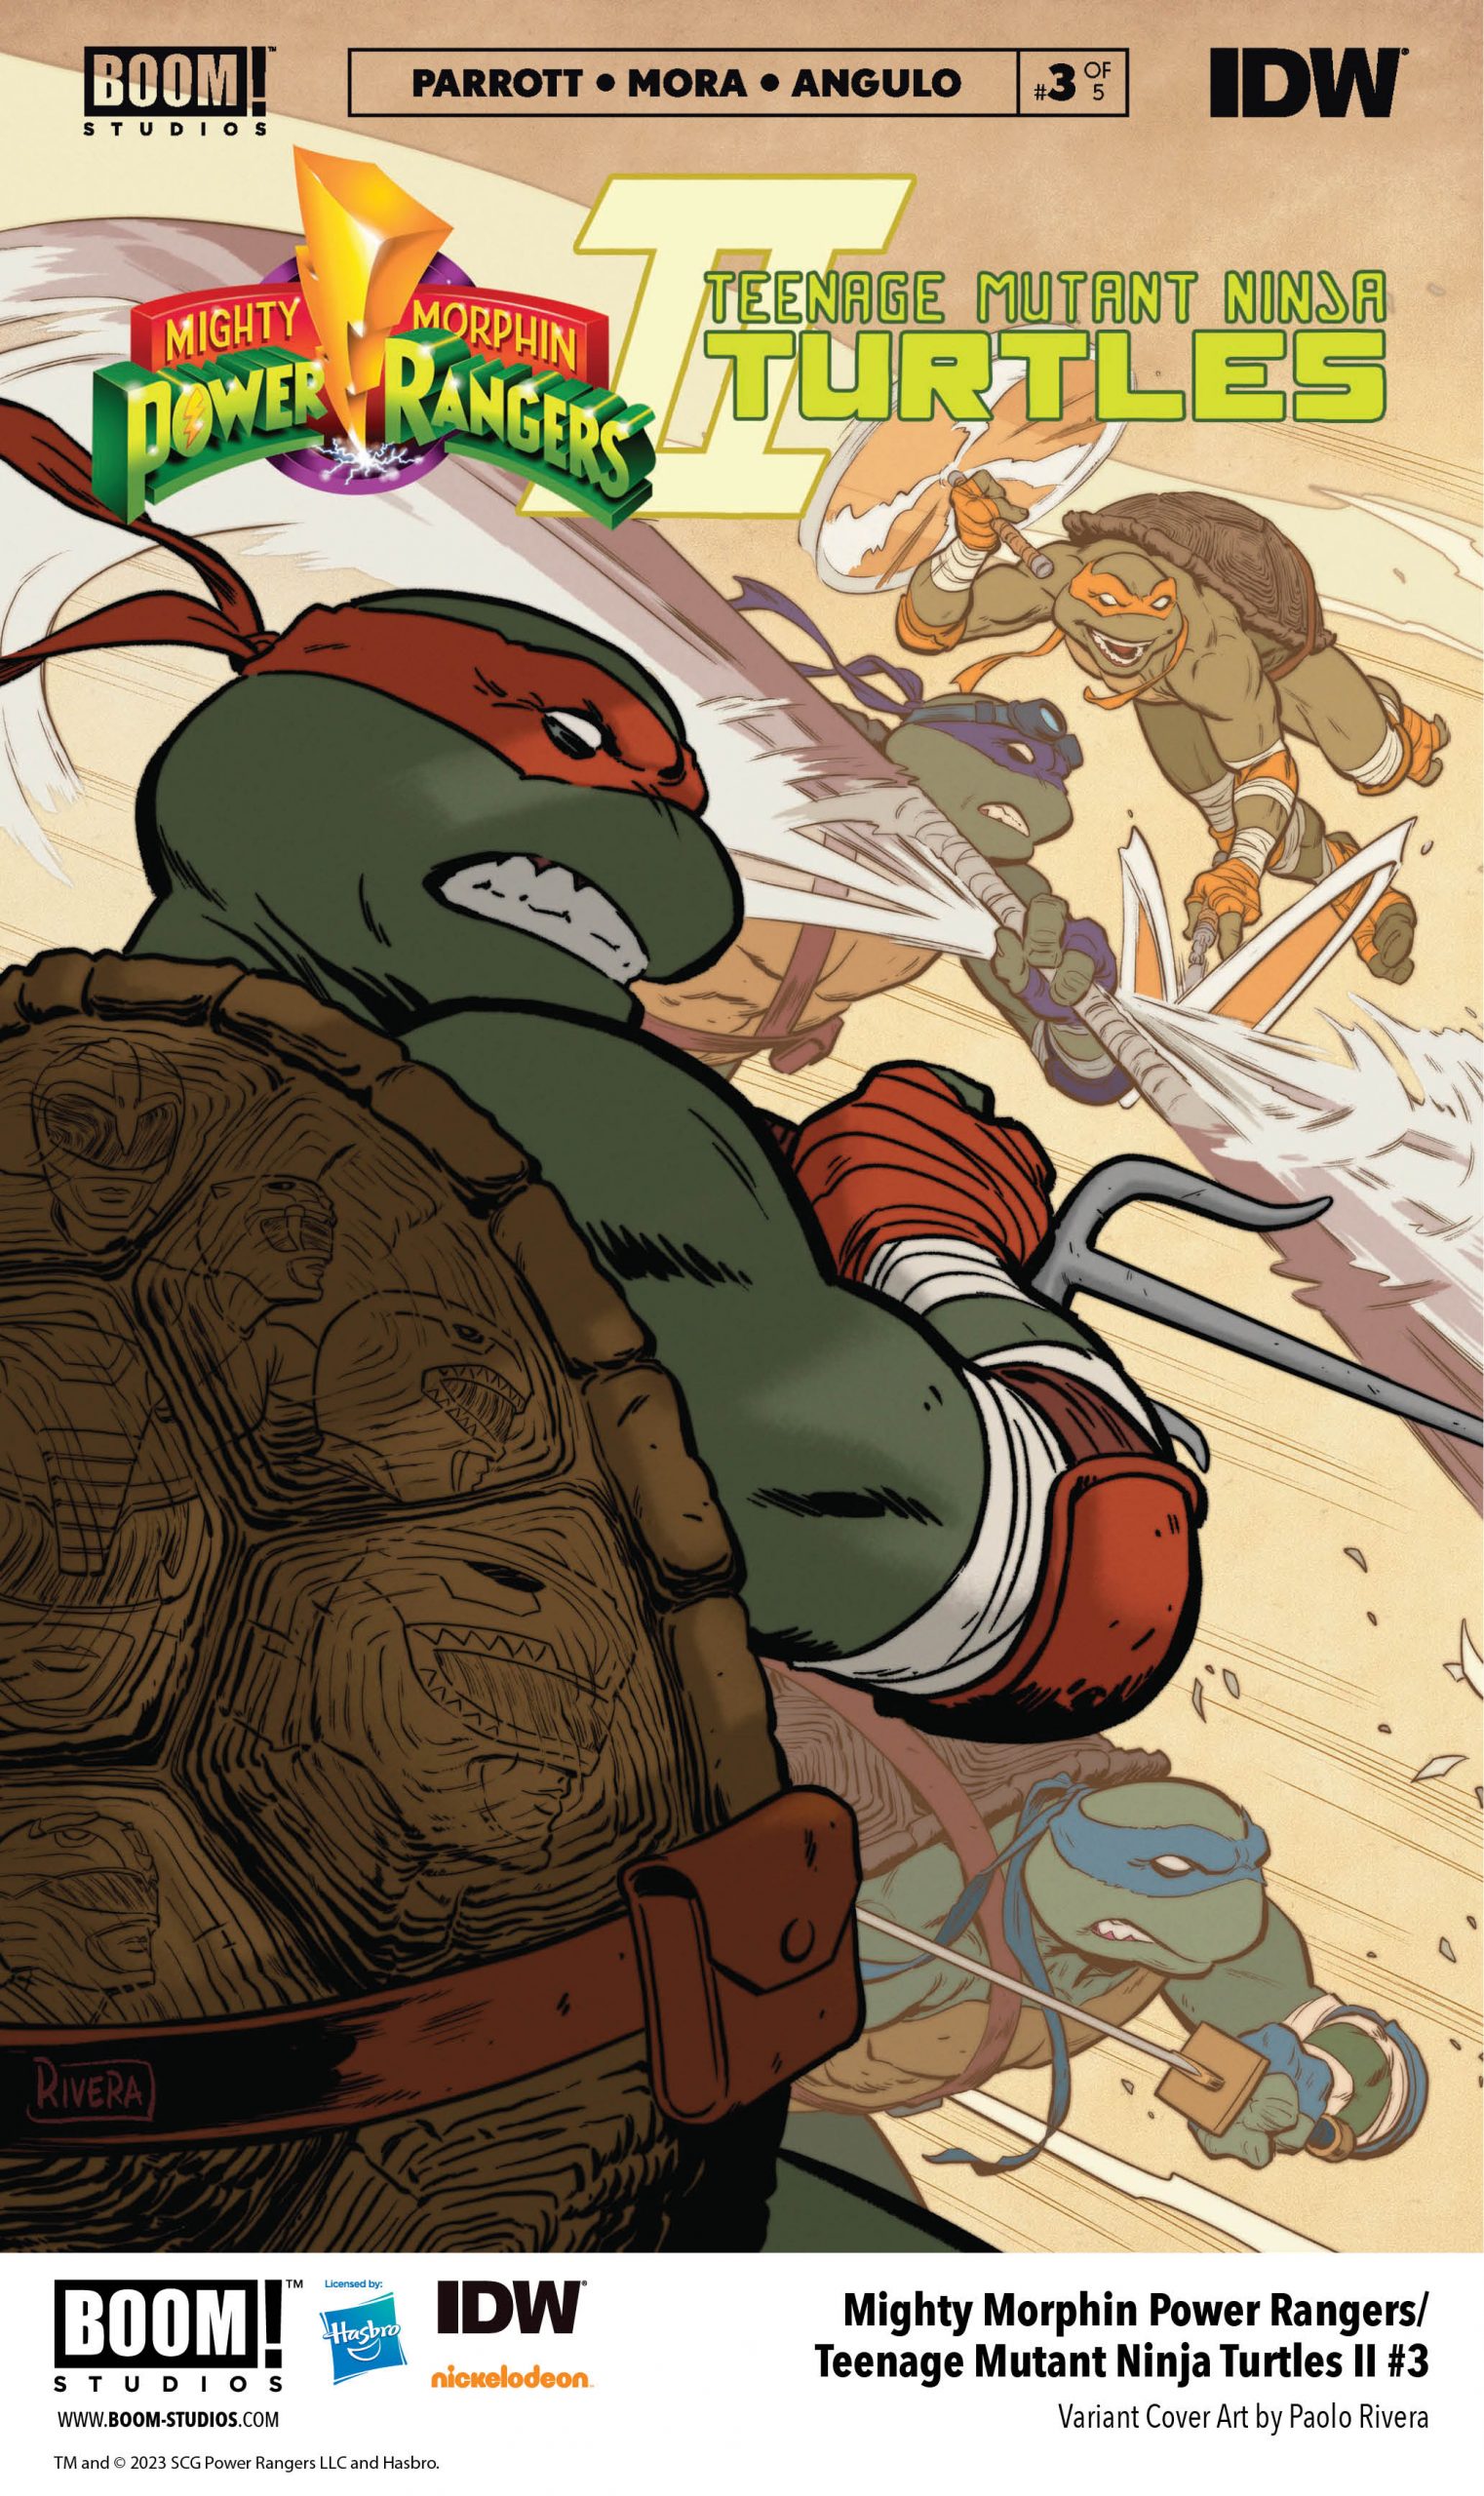 Teenage Mutant Ninja Turtles: Mutant Mayhem' Available via Premium Digital  Sept. 1 - Media Play News